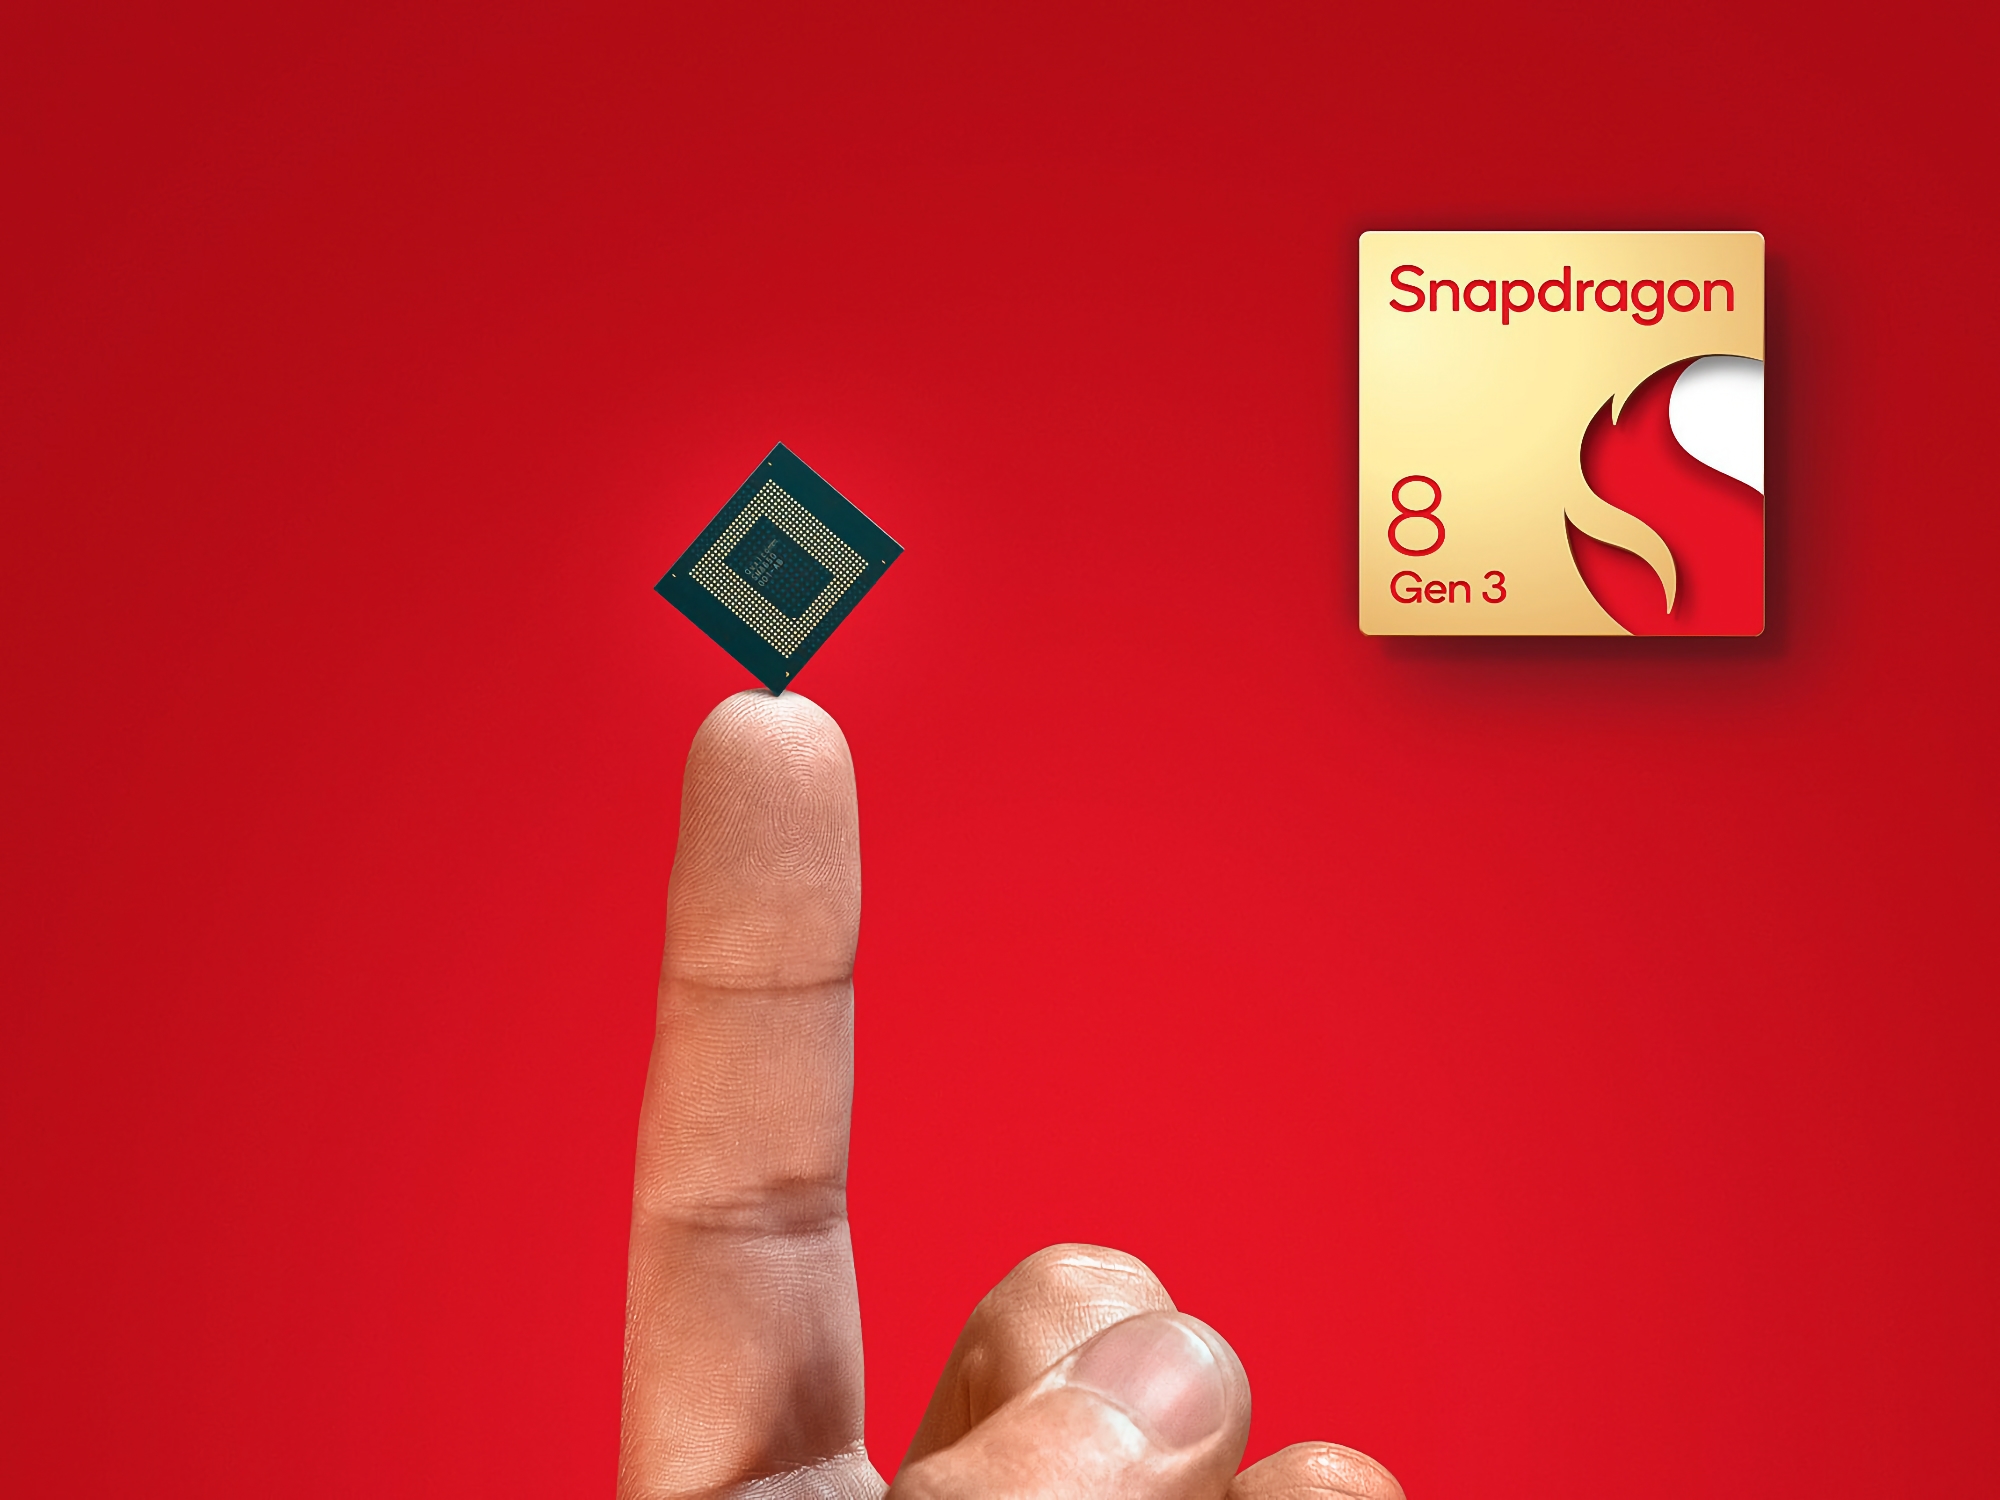 Welke smartphones krijgen als eerste de Snapdragon 8 Gen 3-processor